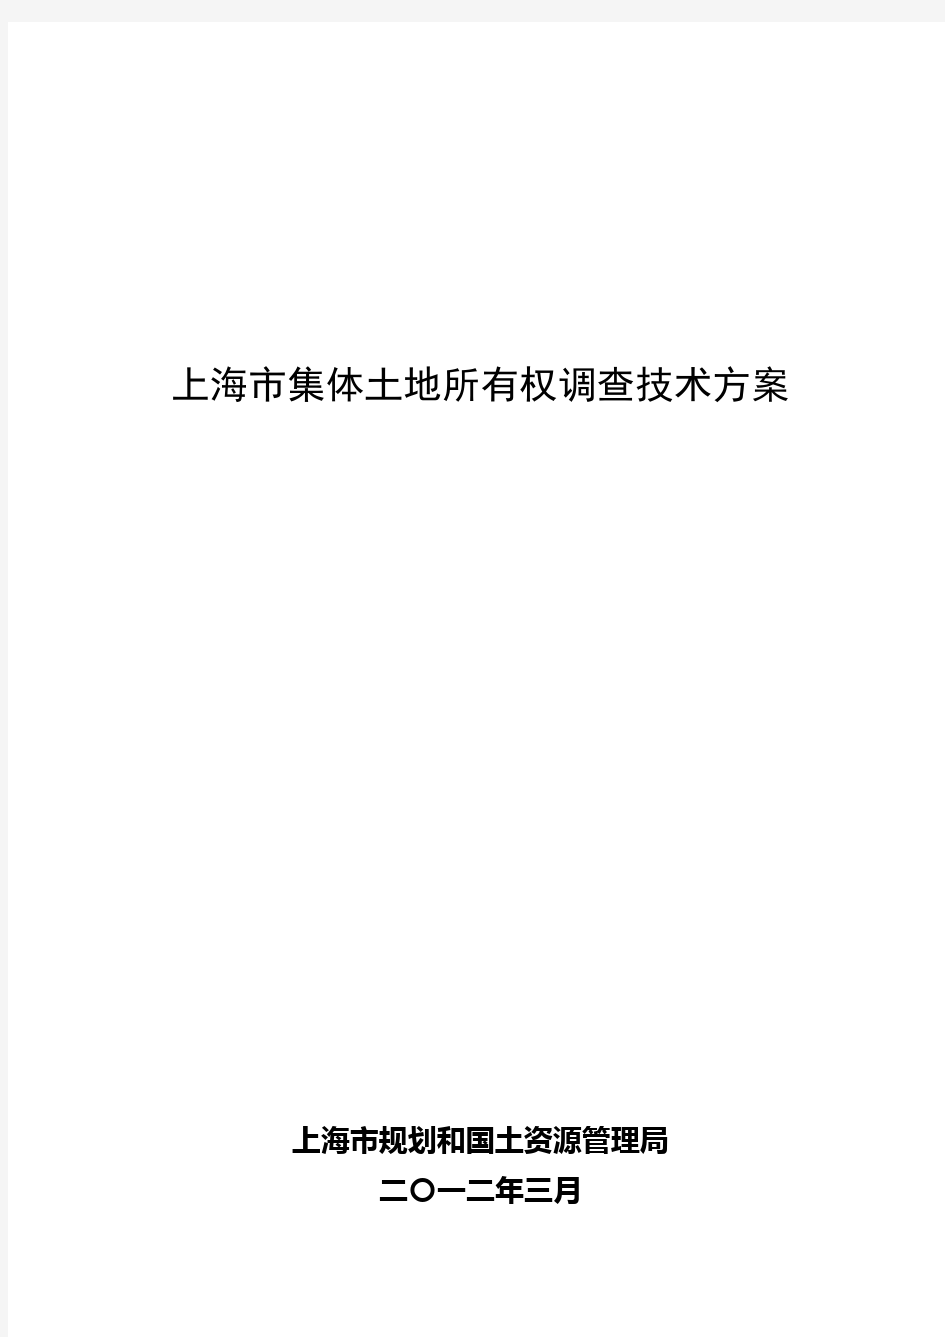 上海市集体土地所有权调查技术方案